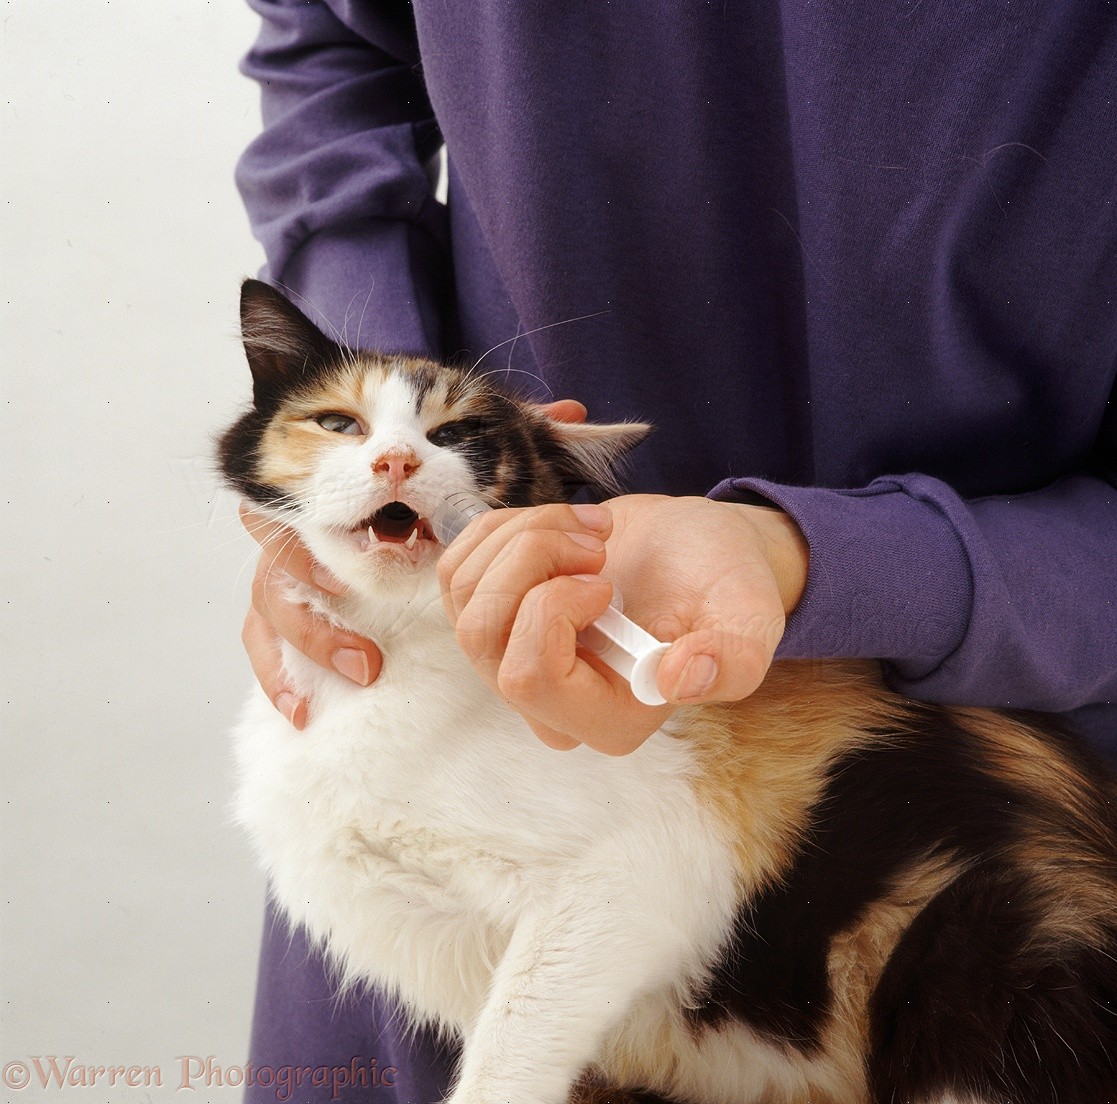 Giving a cat liquid medicine photo WP15154